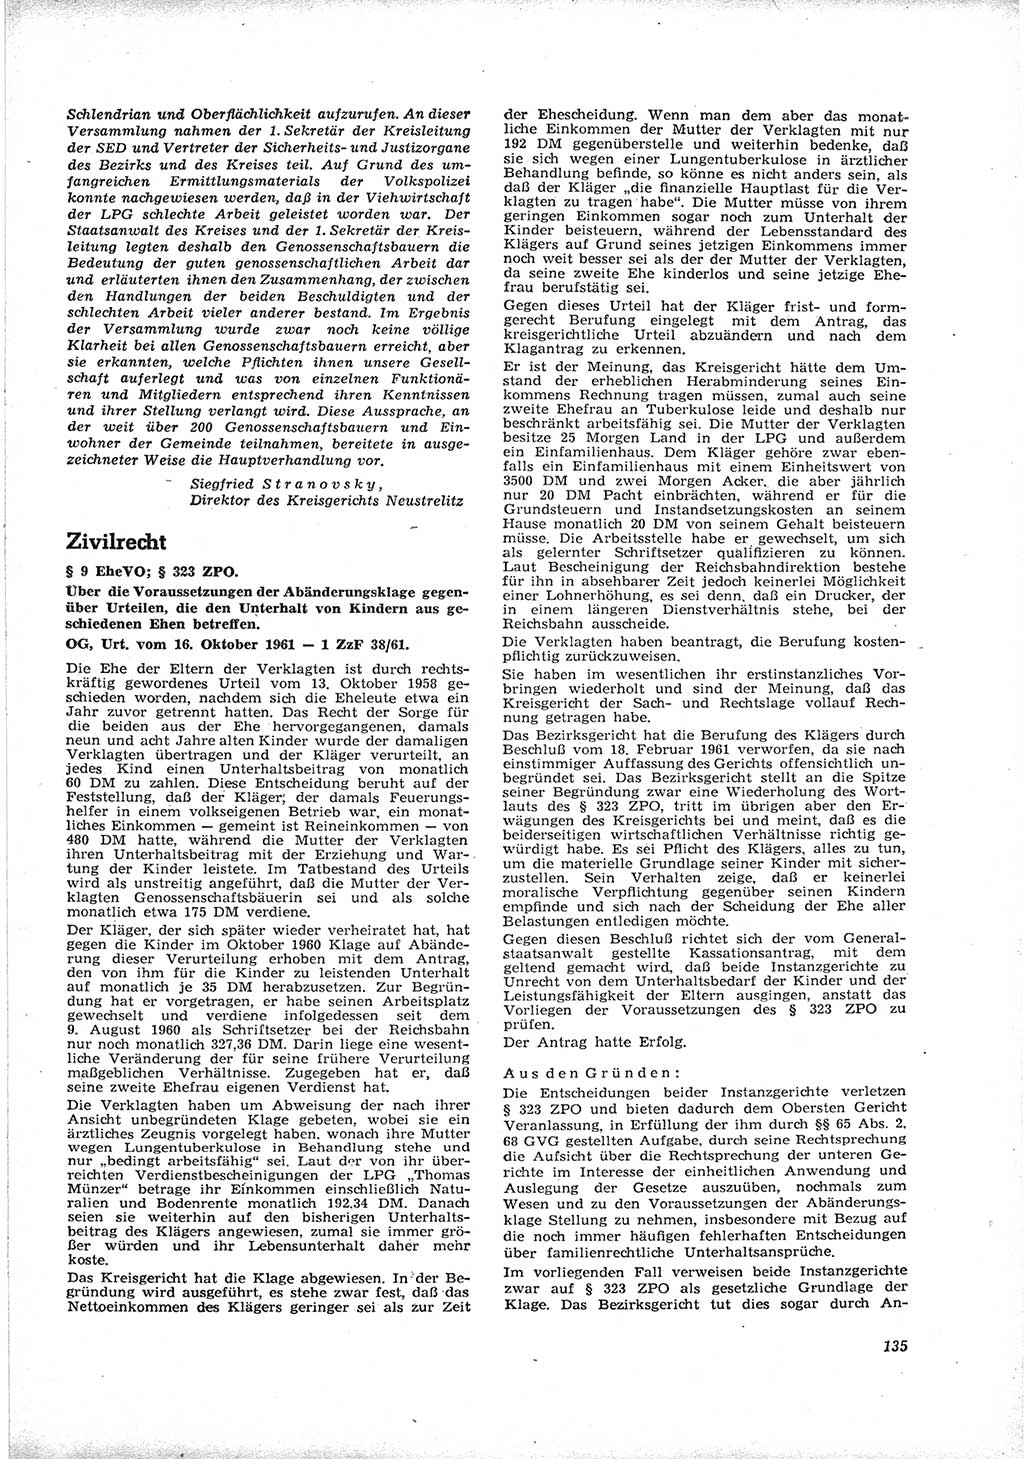 Neue Justiz (NJ), Zeitschrift für Recht und Rechtswissenschaft [Deutsche Demokratische Republik (DDR)], 16. Jahrgang 1962, Seite 135 (NJ DDR 1962, S. 135)